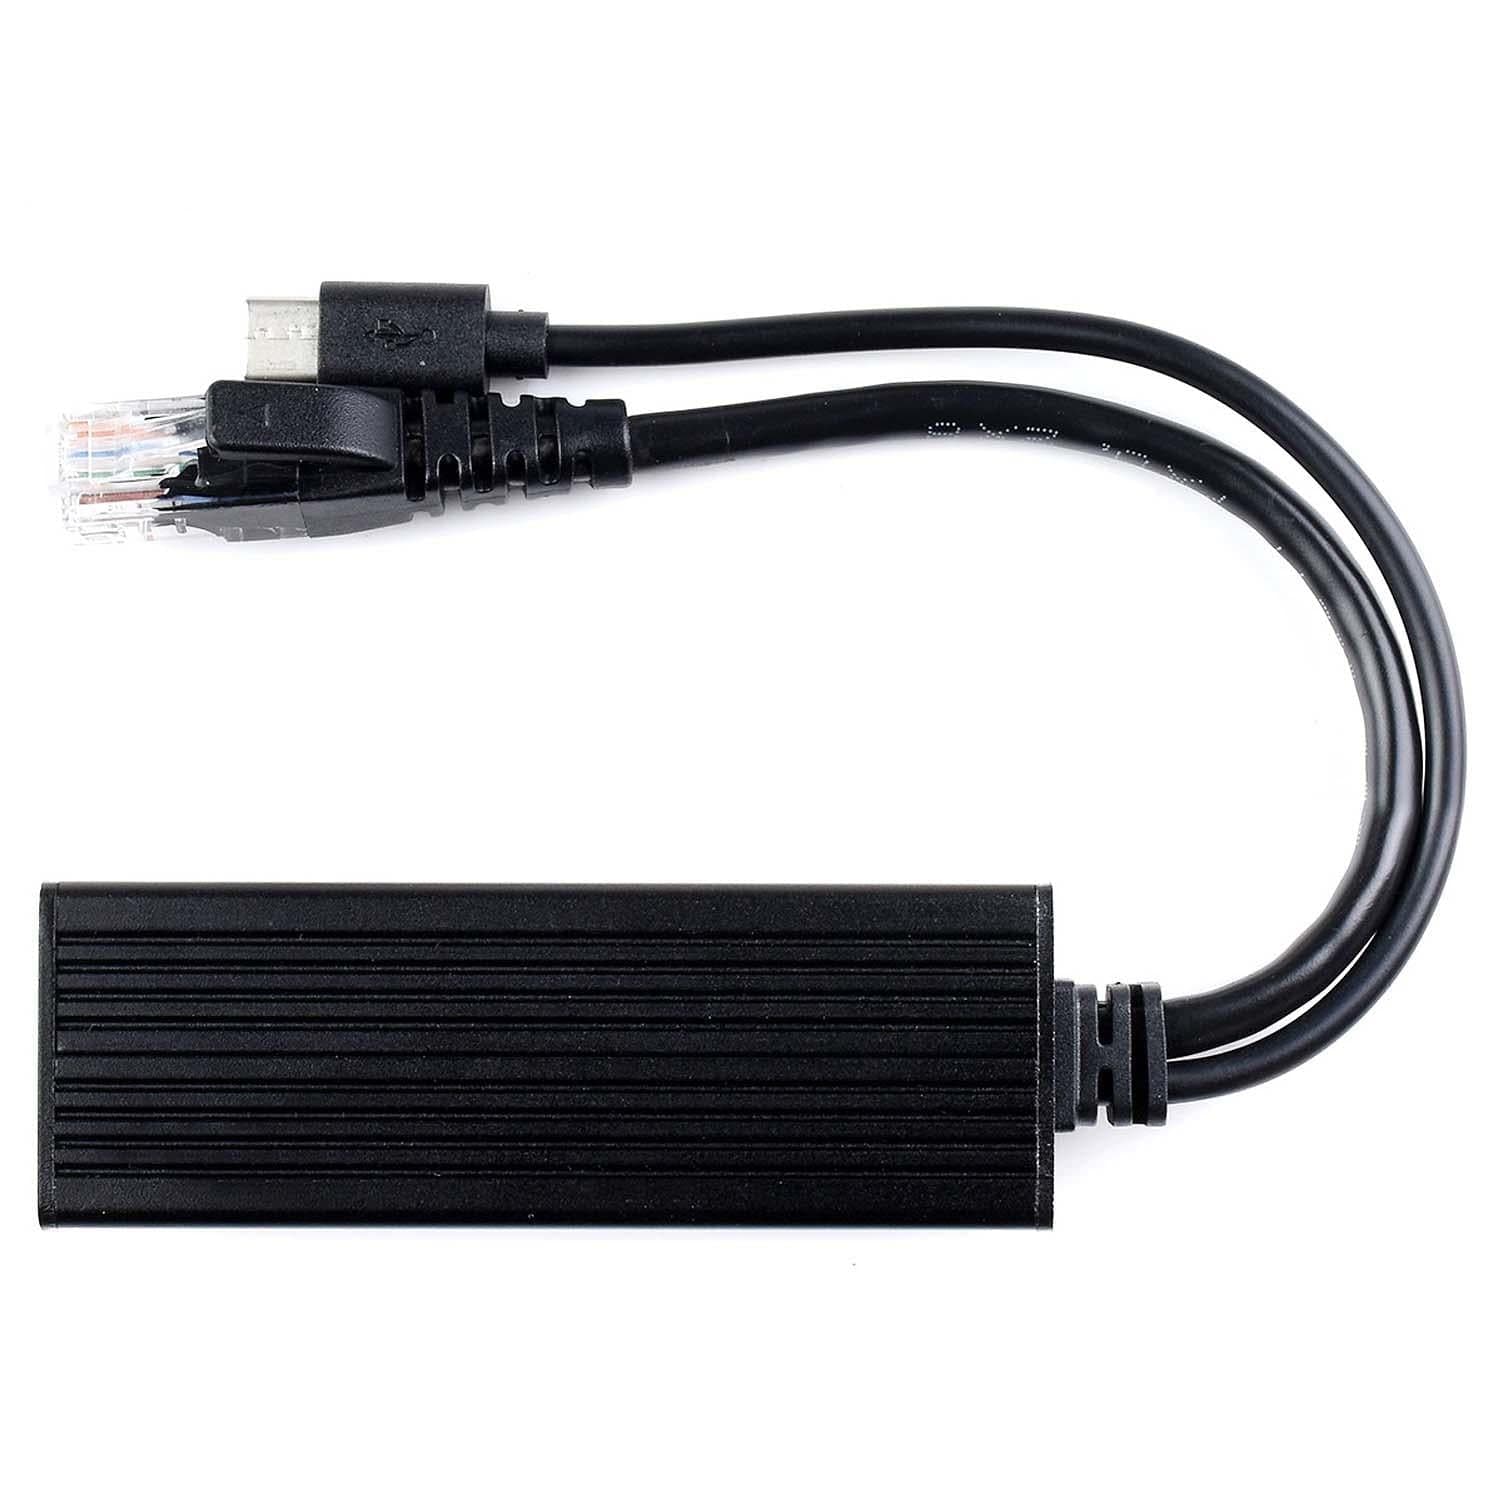 Industrial USB-C Gigabit PoE Splitter (5V 2.5A) - The Pi Hut